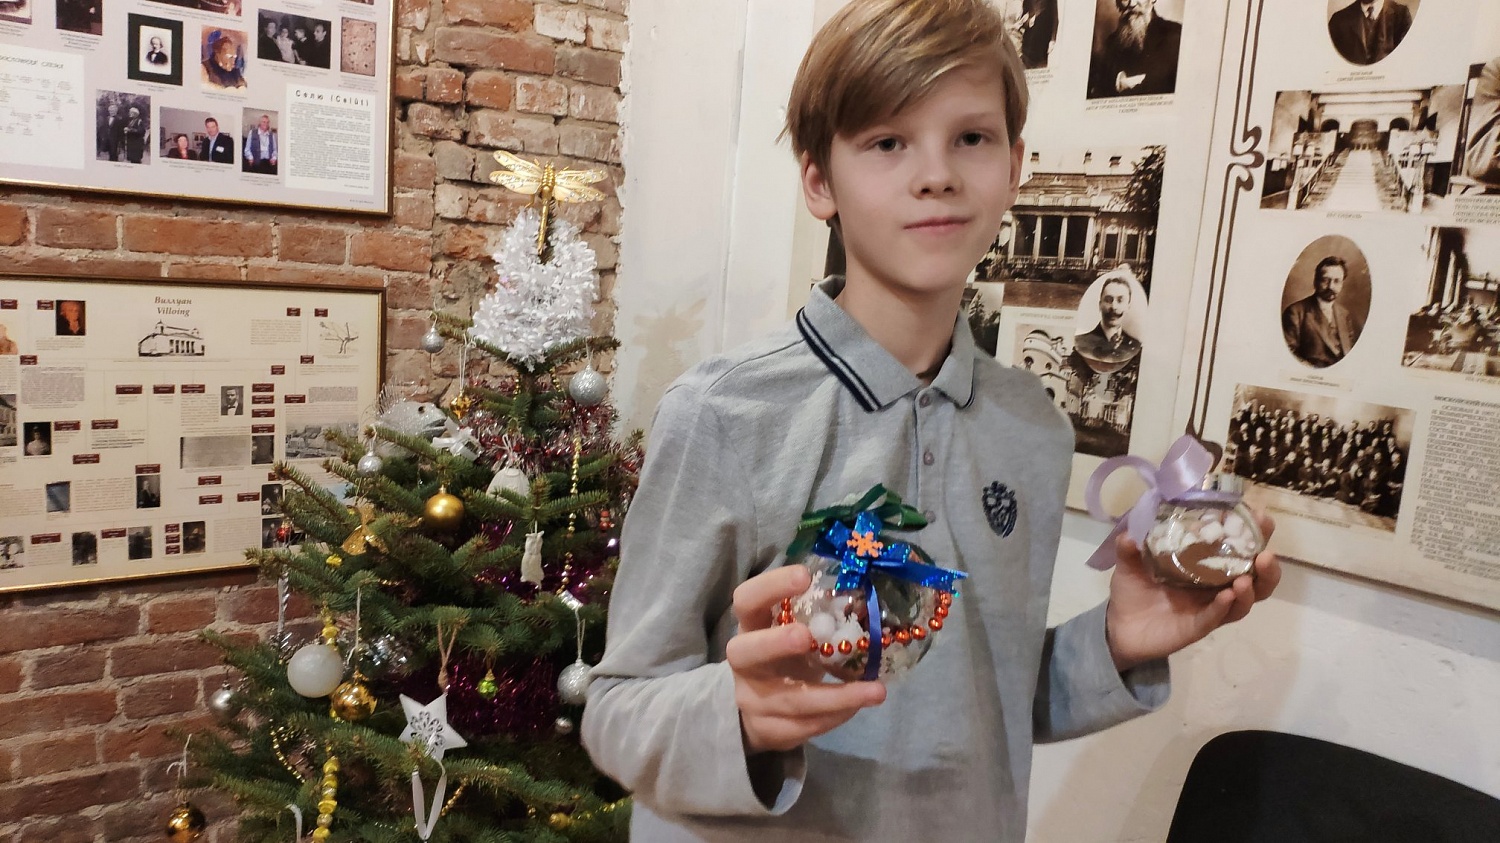 Рождественская программа "Удивление от Абрикосова на Рождественской елке" нравится и детям, и взрослым! 